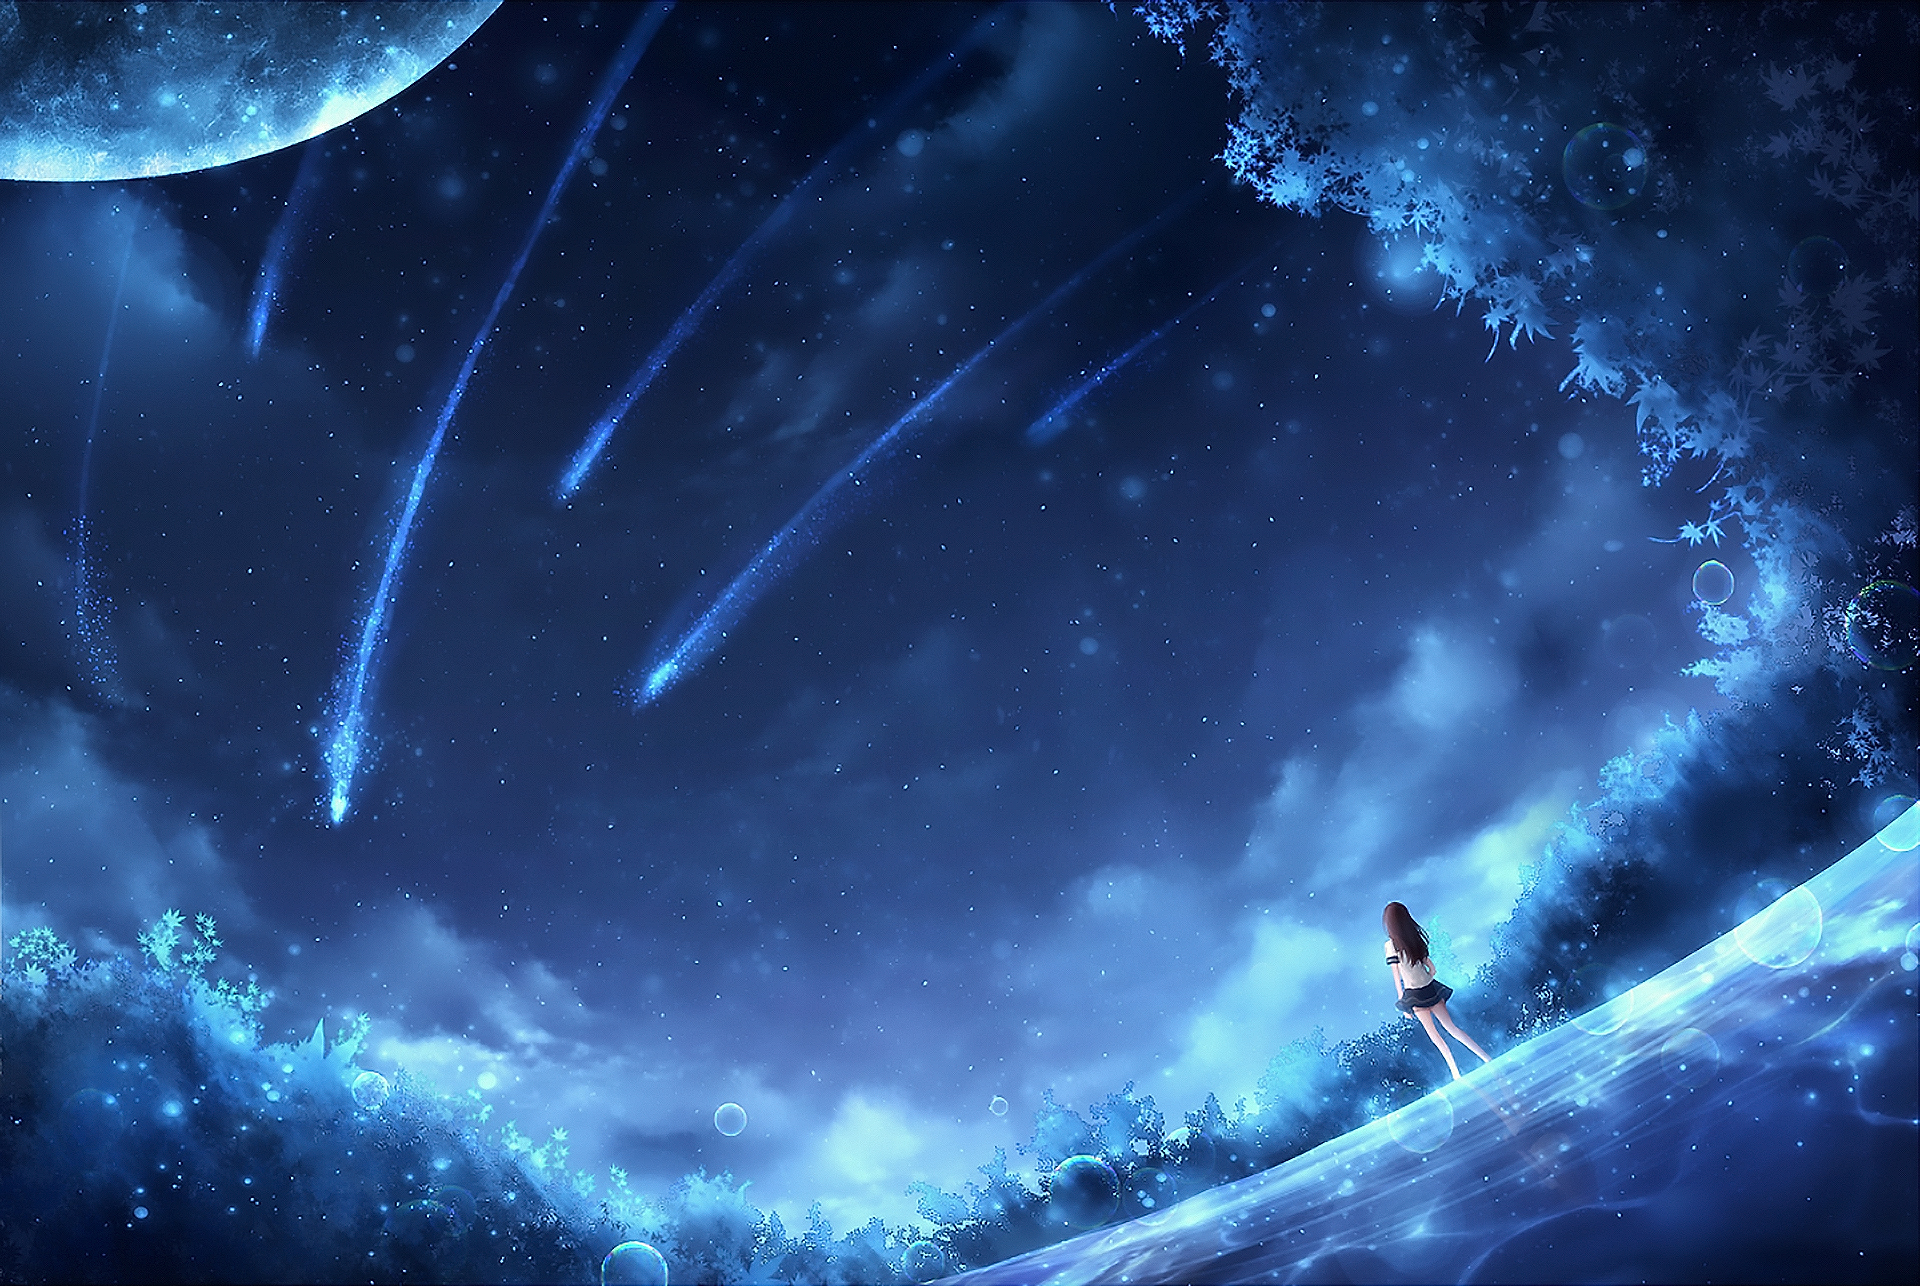 Anime Sky Art by CZY